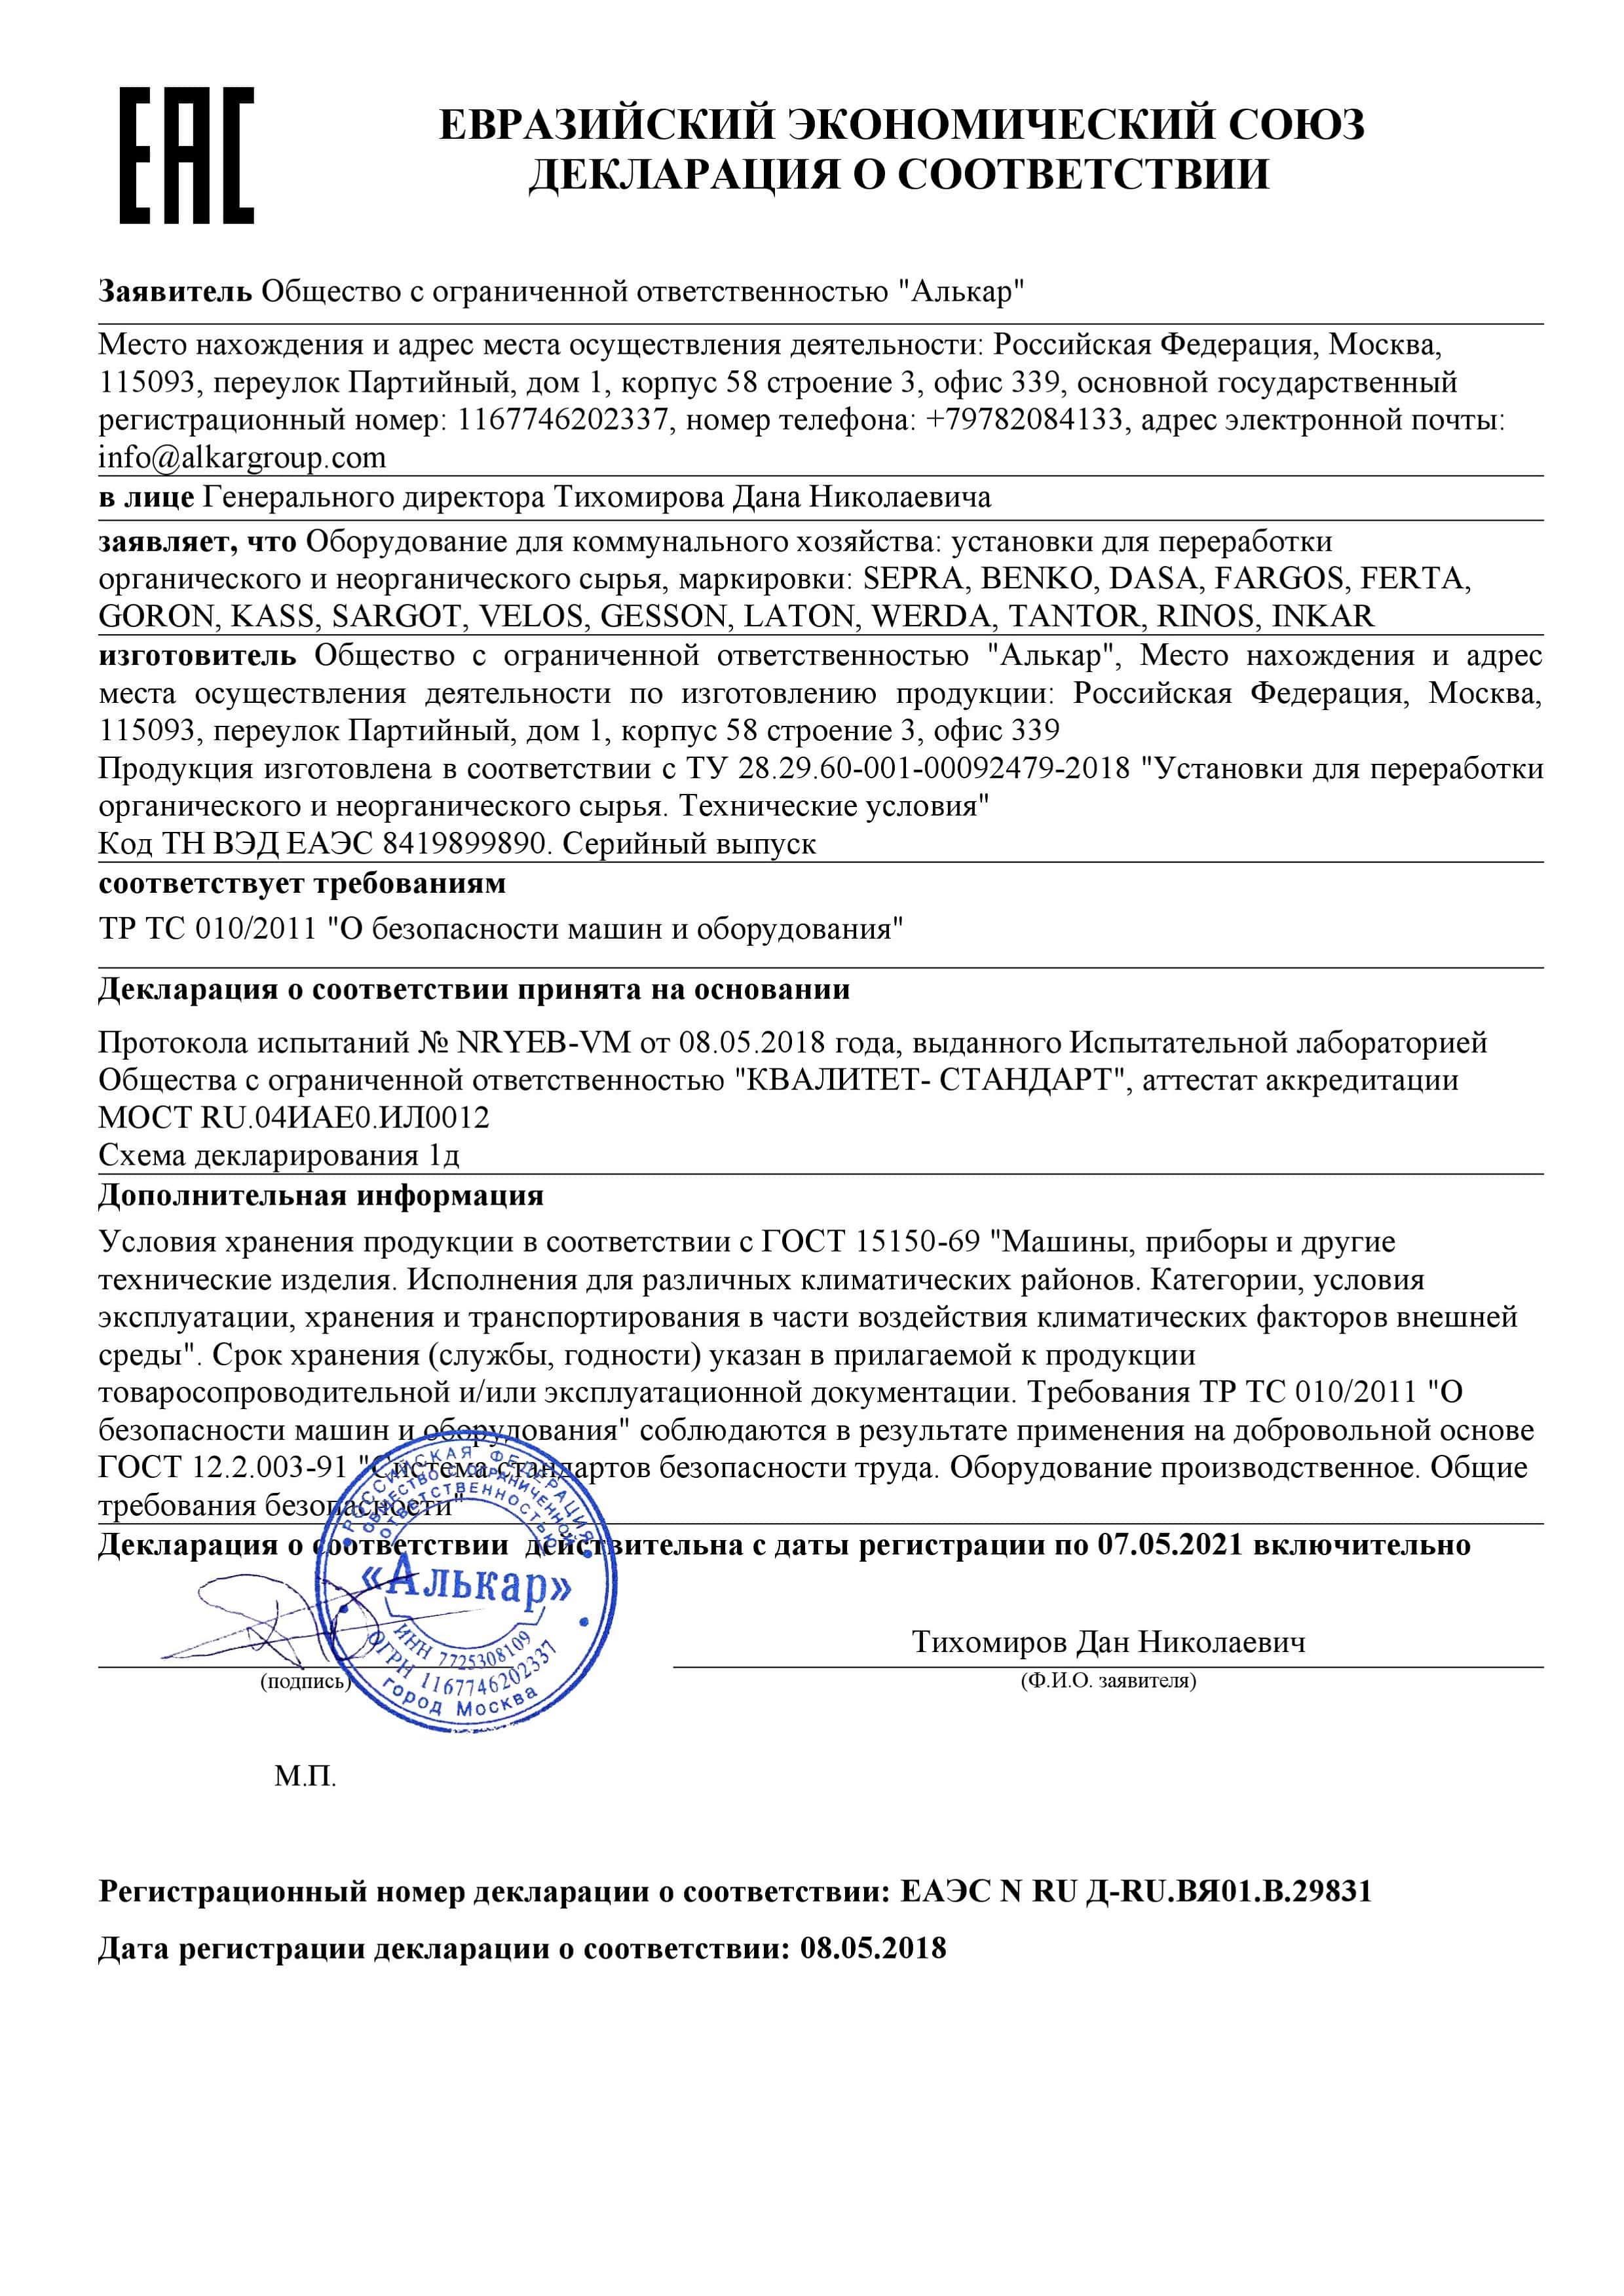 Декларация о соответствии требования ТР ТС 010/2011